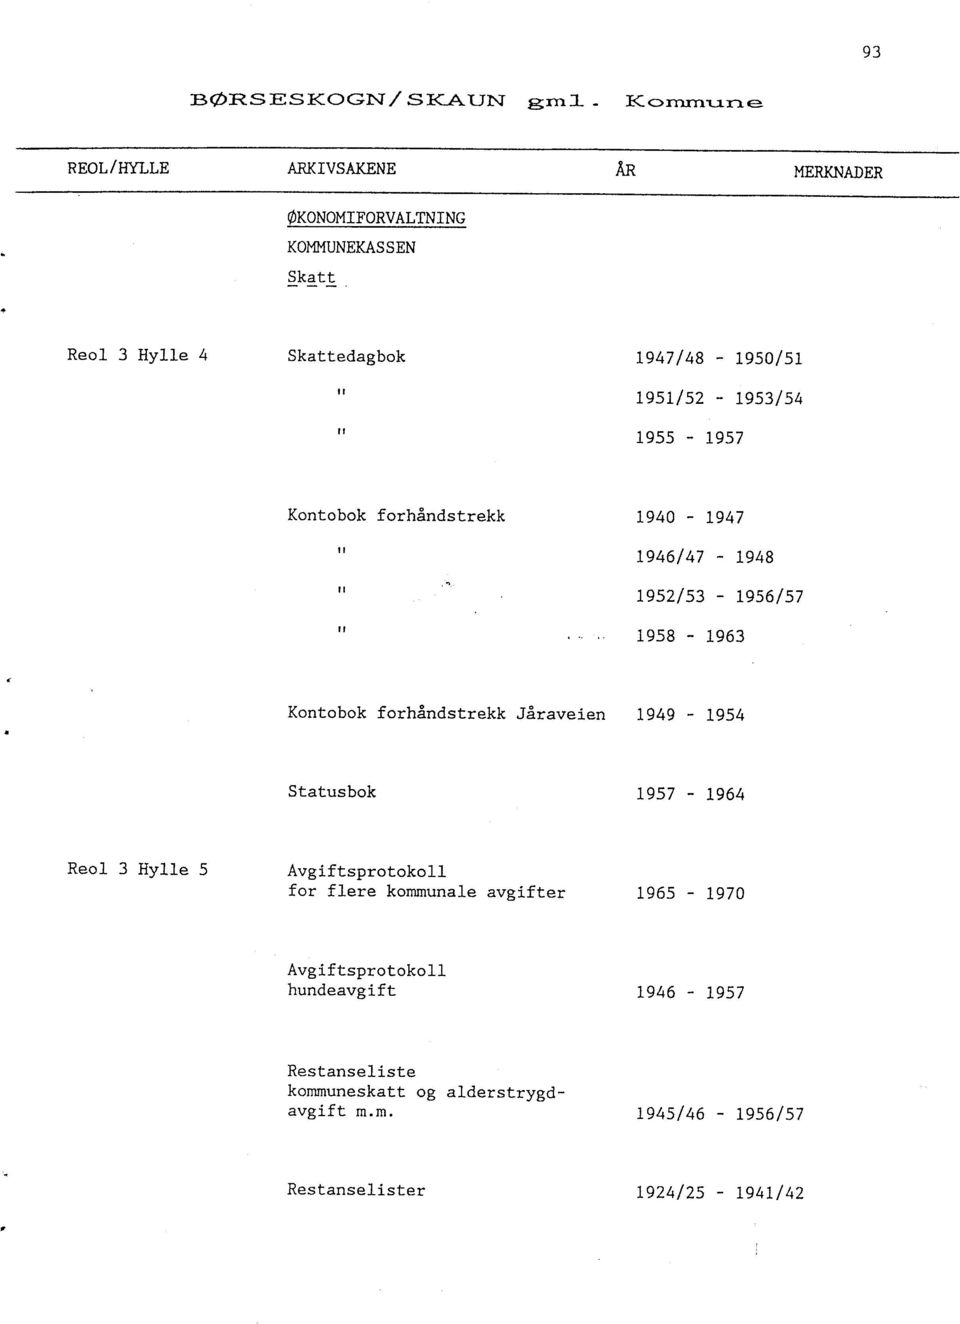 forhåndstrekk Jåraveien 1949-1954 Statusbok 1957-1964 Reol 3 Hylle 5 Avgiftsprotokoll for flere kommunale avgifter 1965-1970